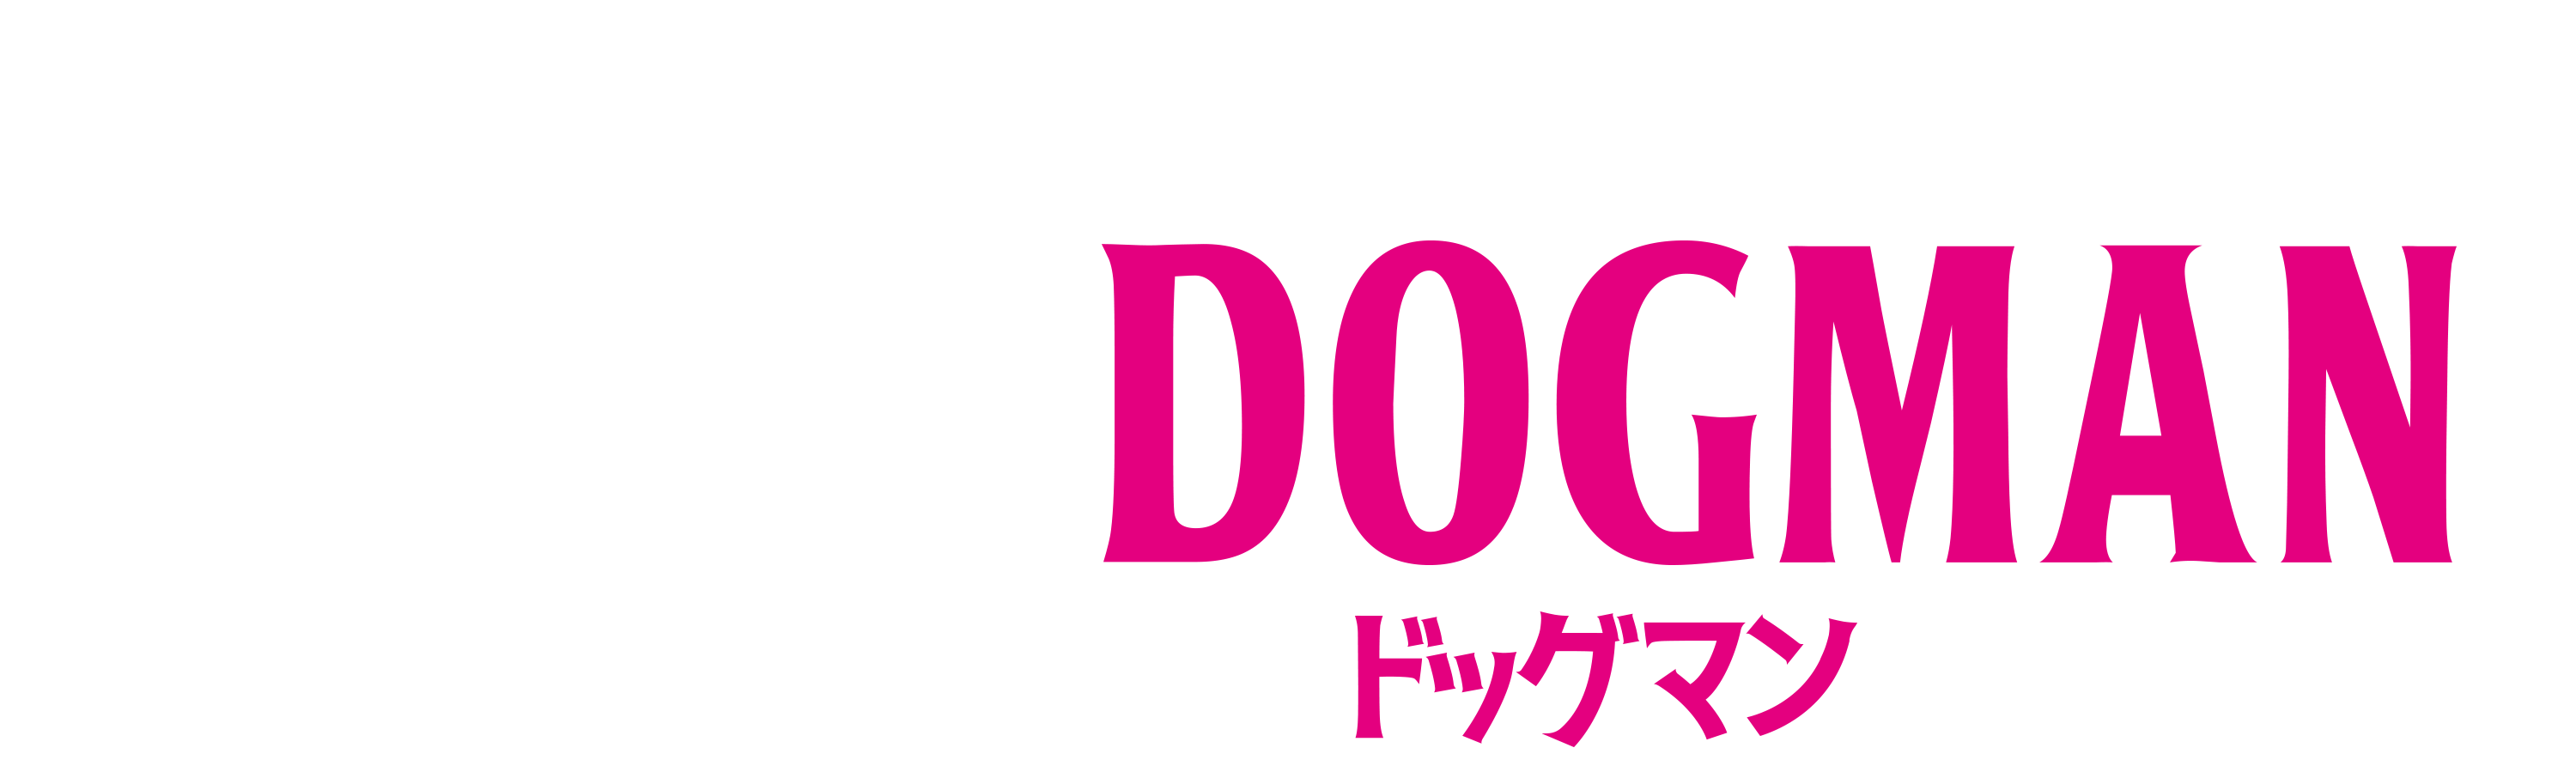 映画『DOGMAN ドッグマン』